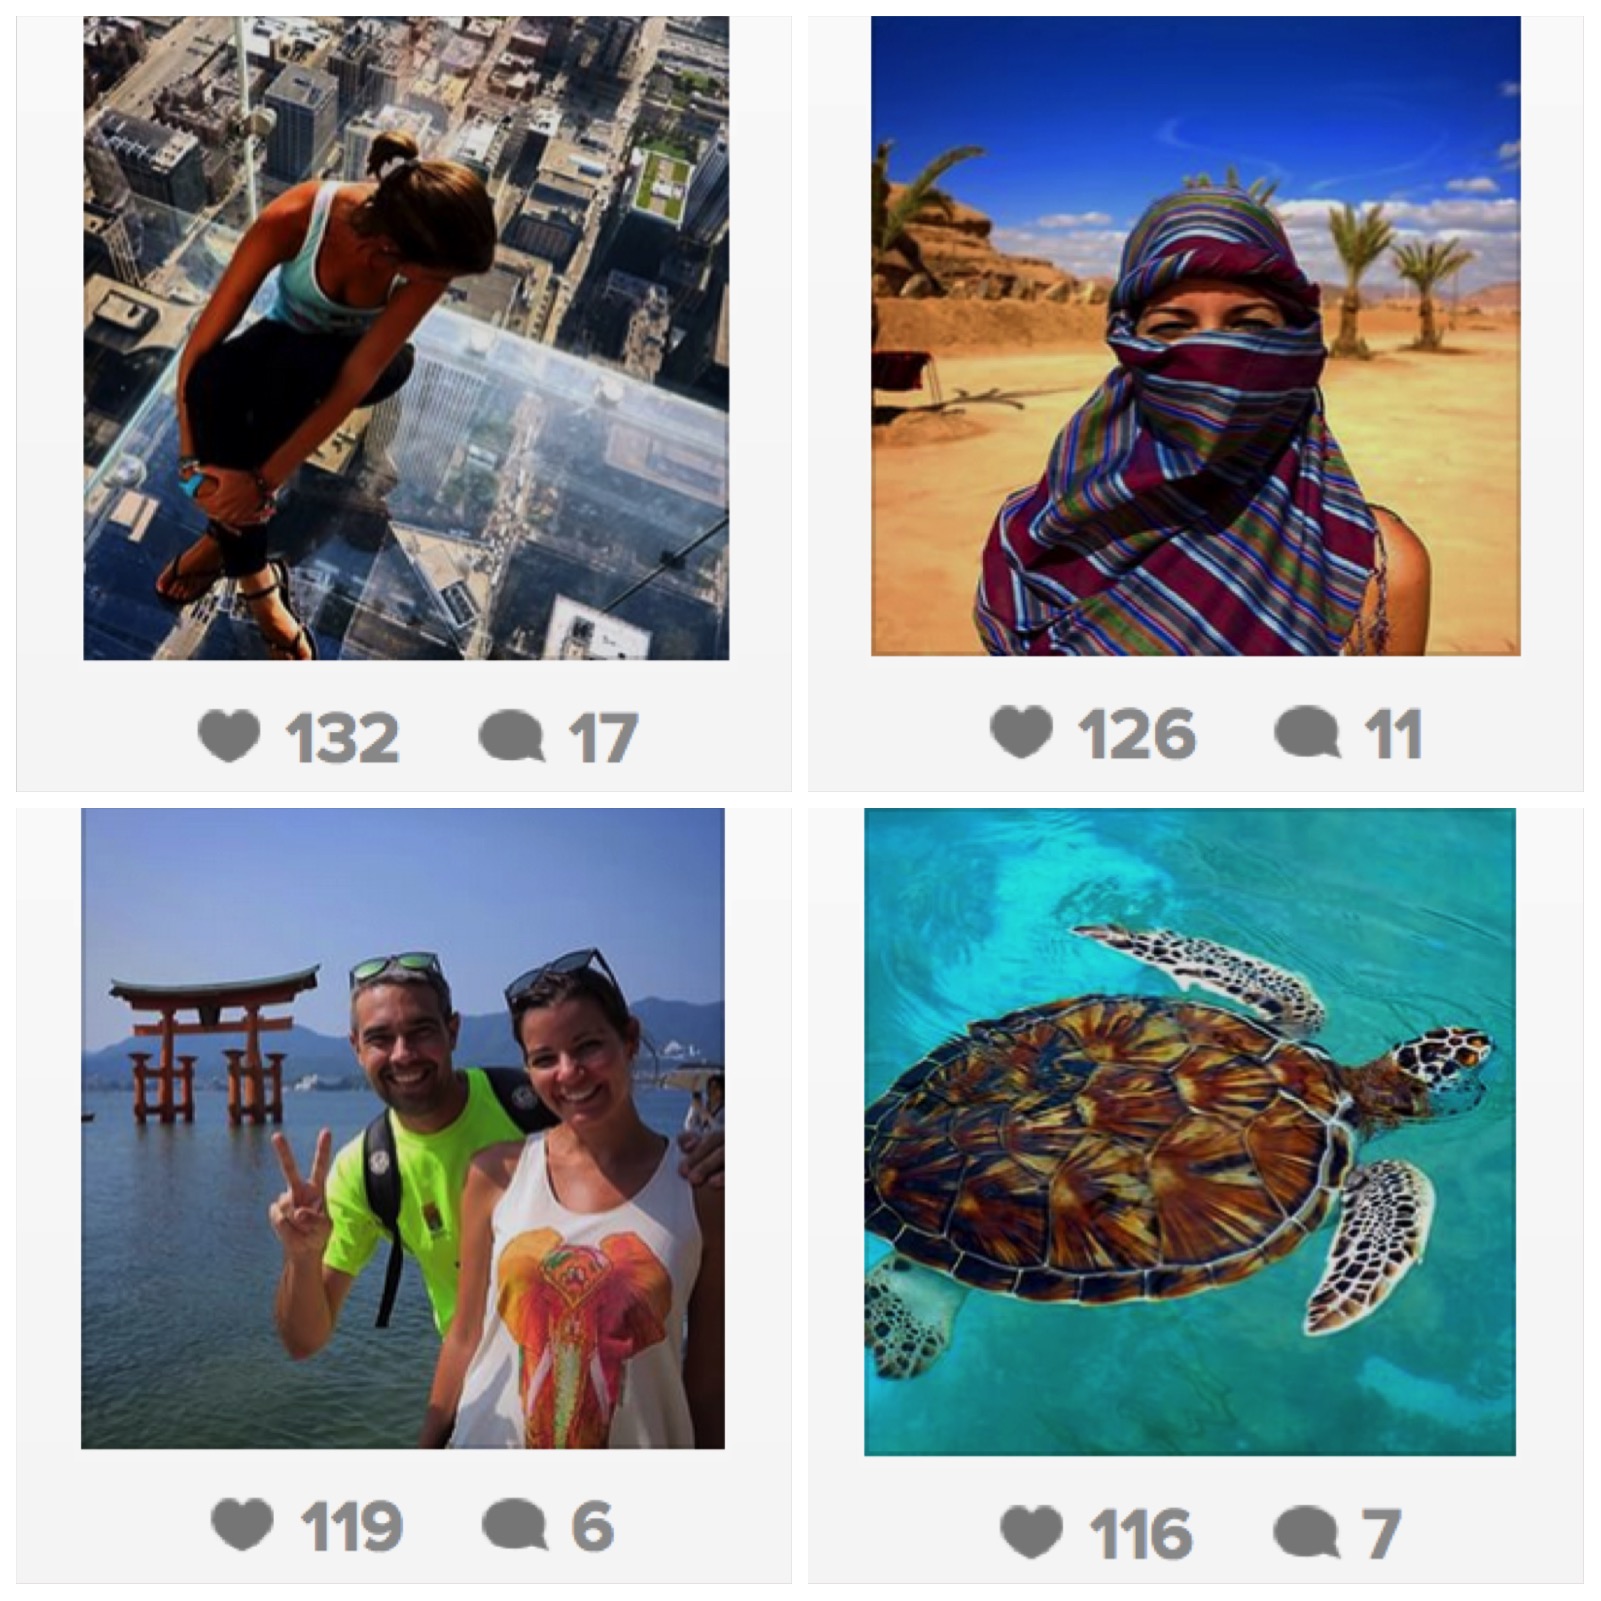 Vuelta al Mundo: fotos más populares en Instagram